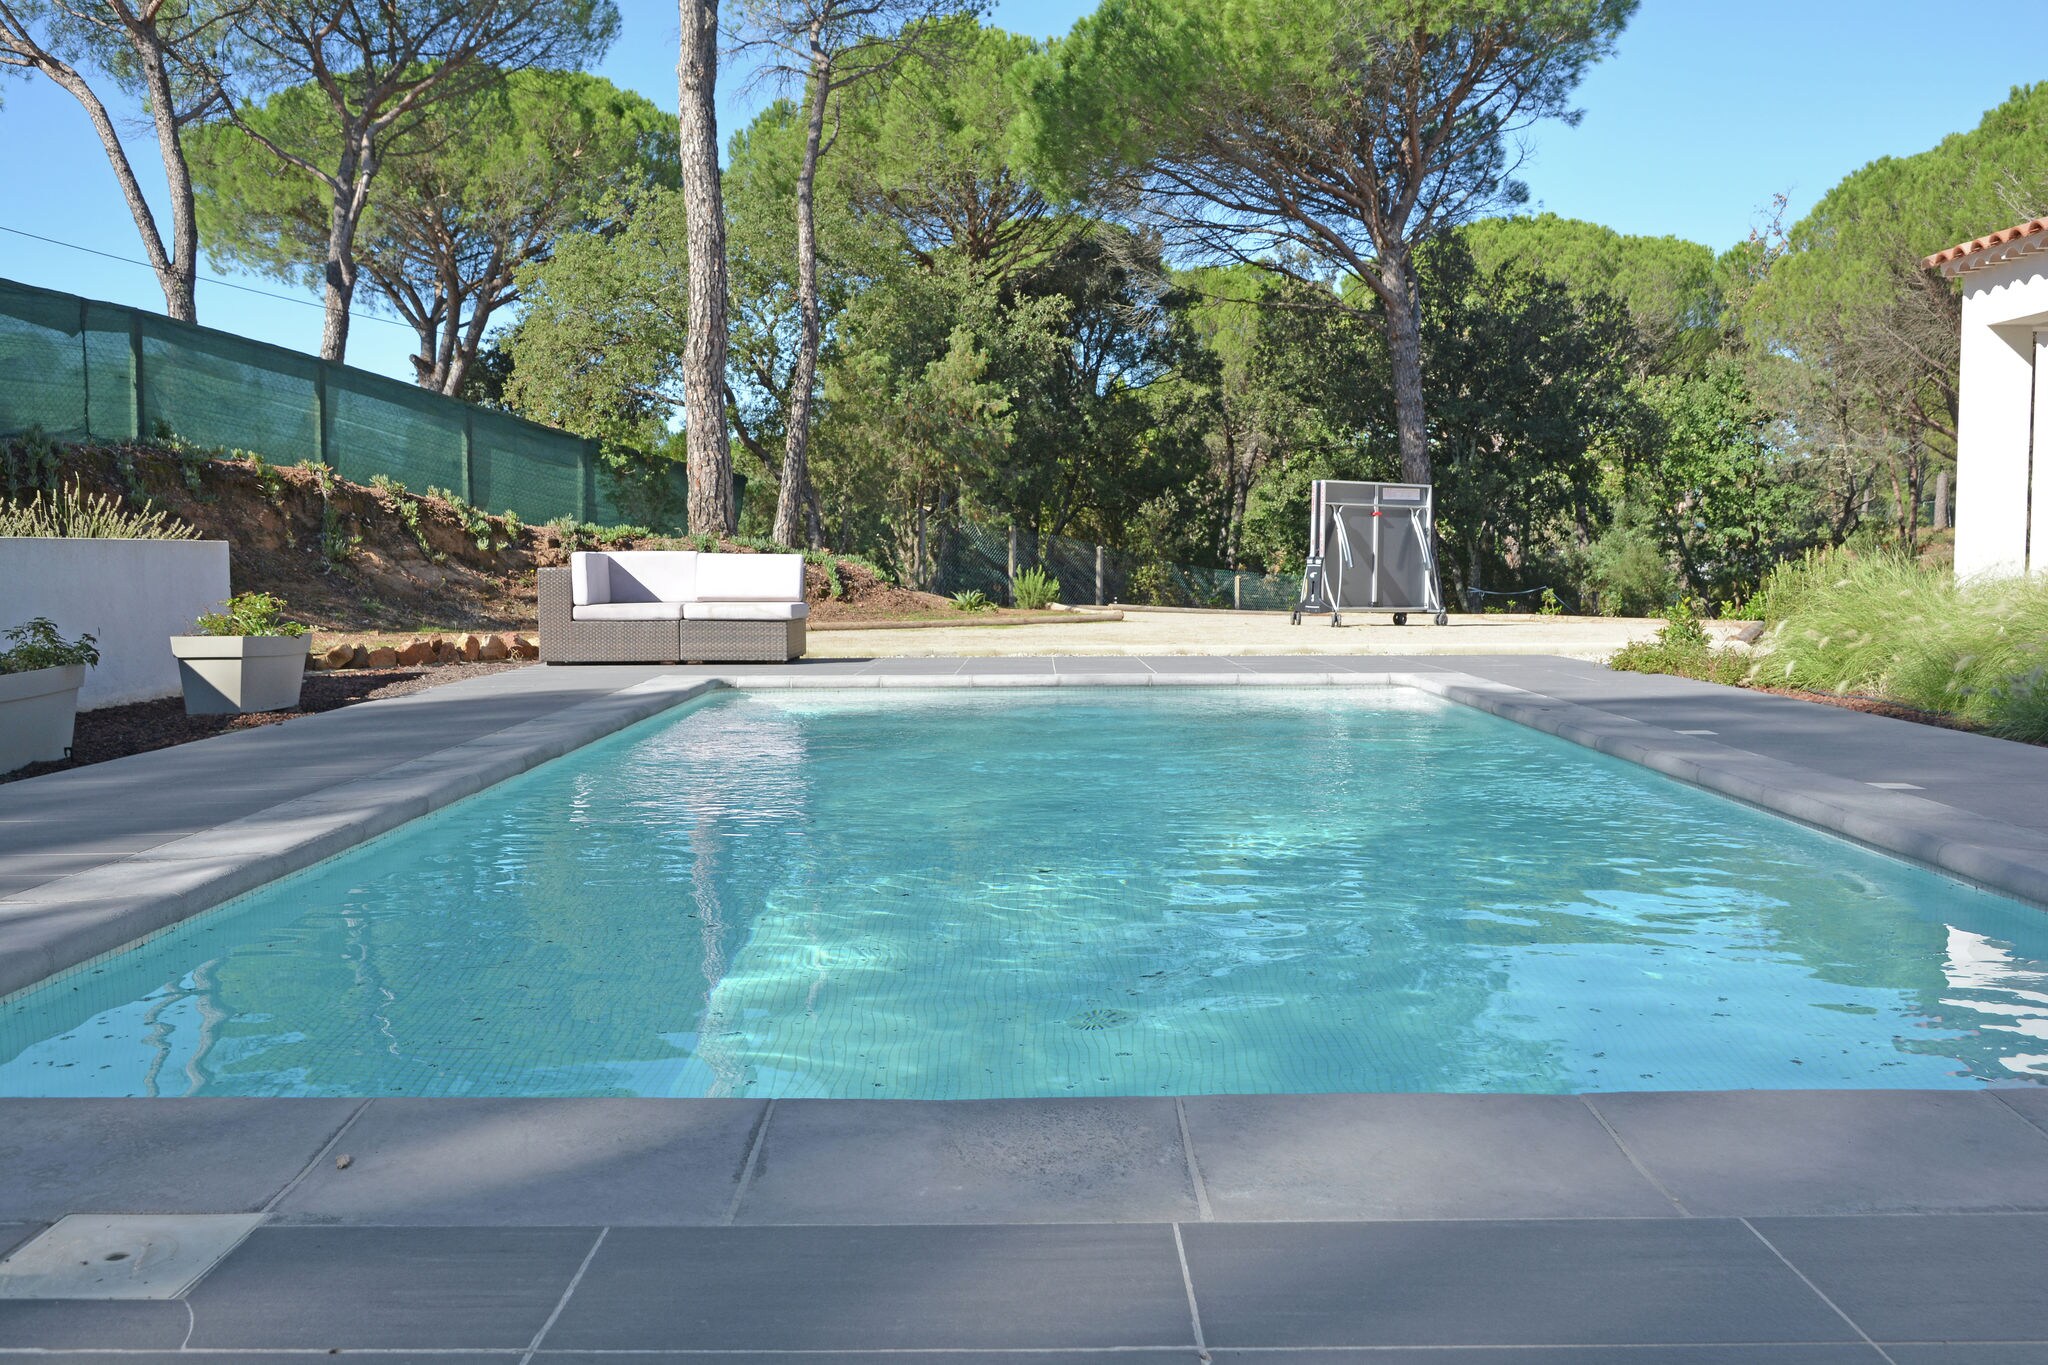 Villa met airco, VERWARMD privezwembad (april 2022) in Provence, op half uur rijden van het strand